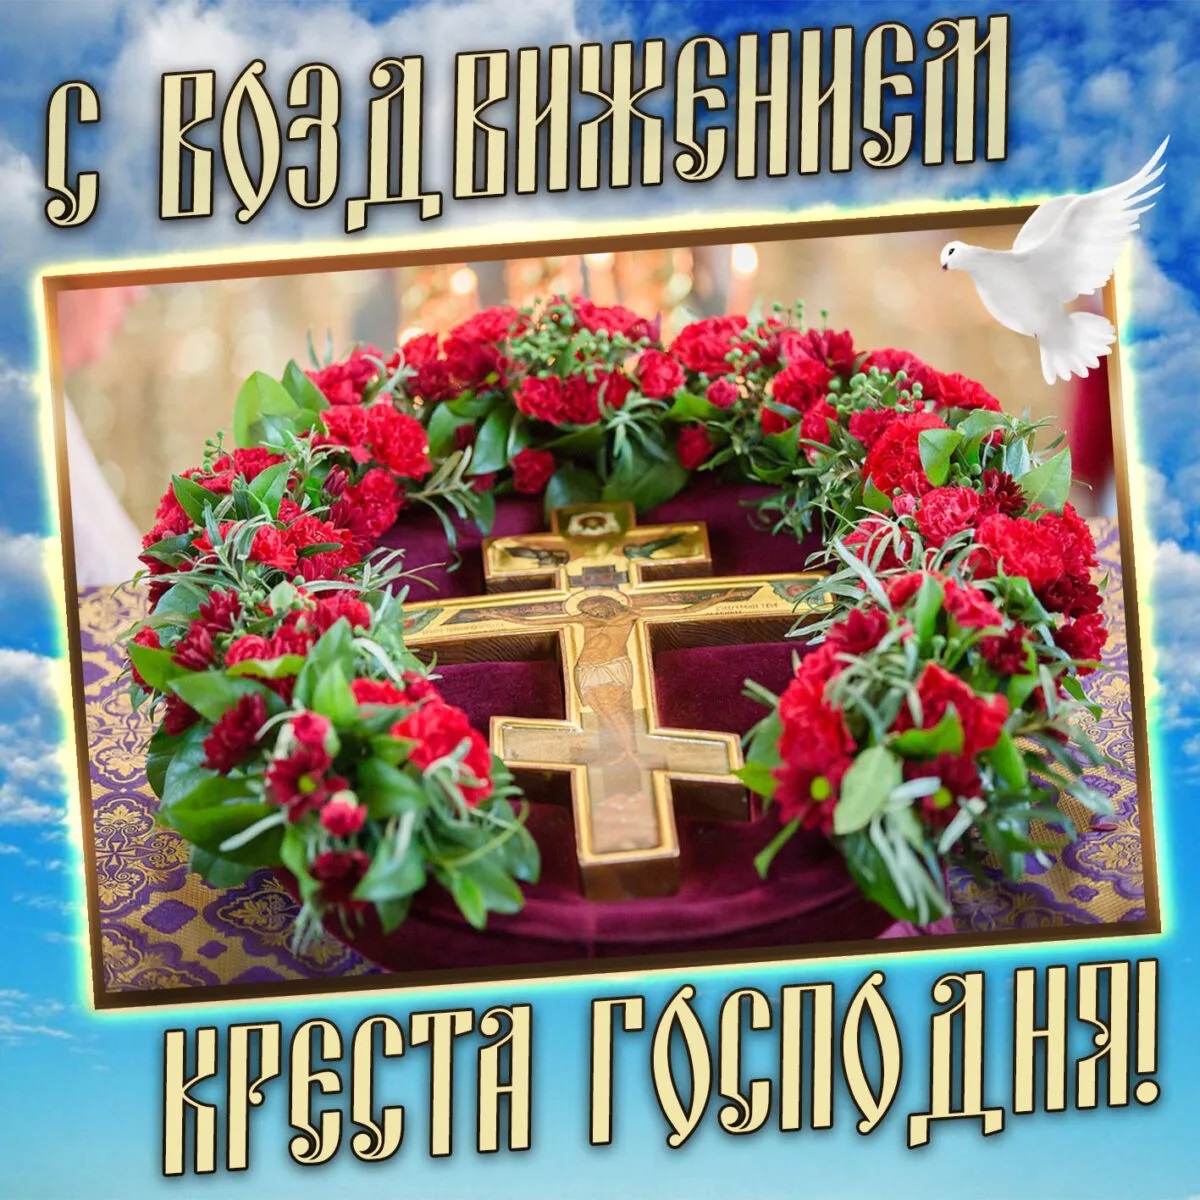 14 сентября — праздник Воздвижение Креста Господня: лучшие поздравления для родных и близких - фото №7